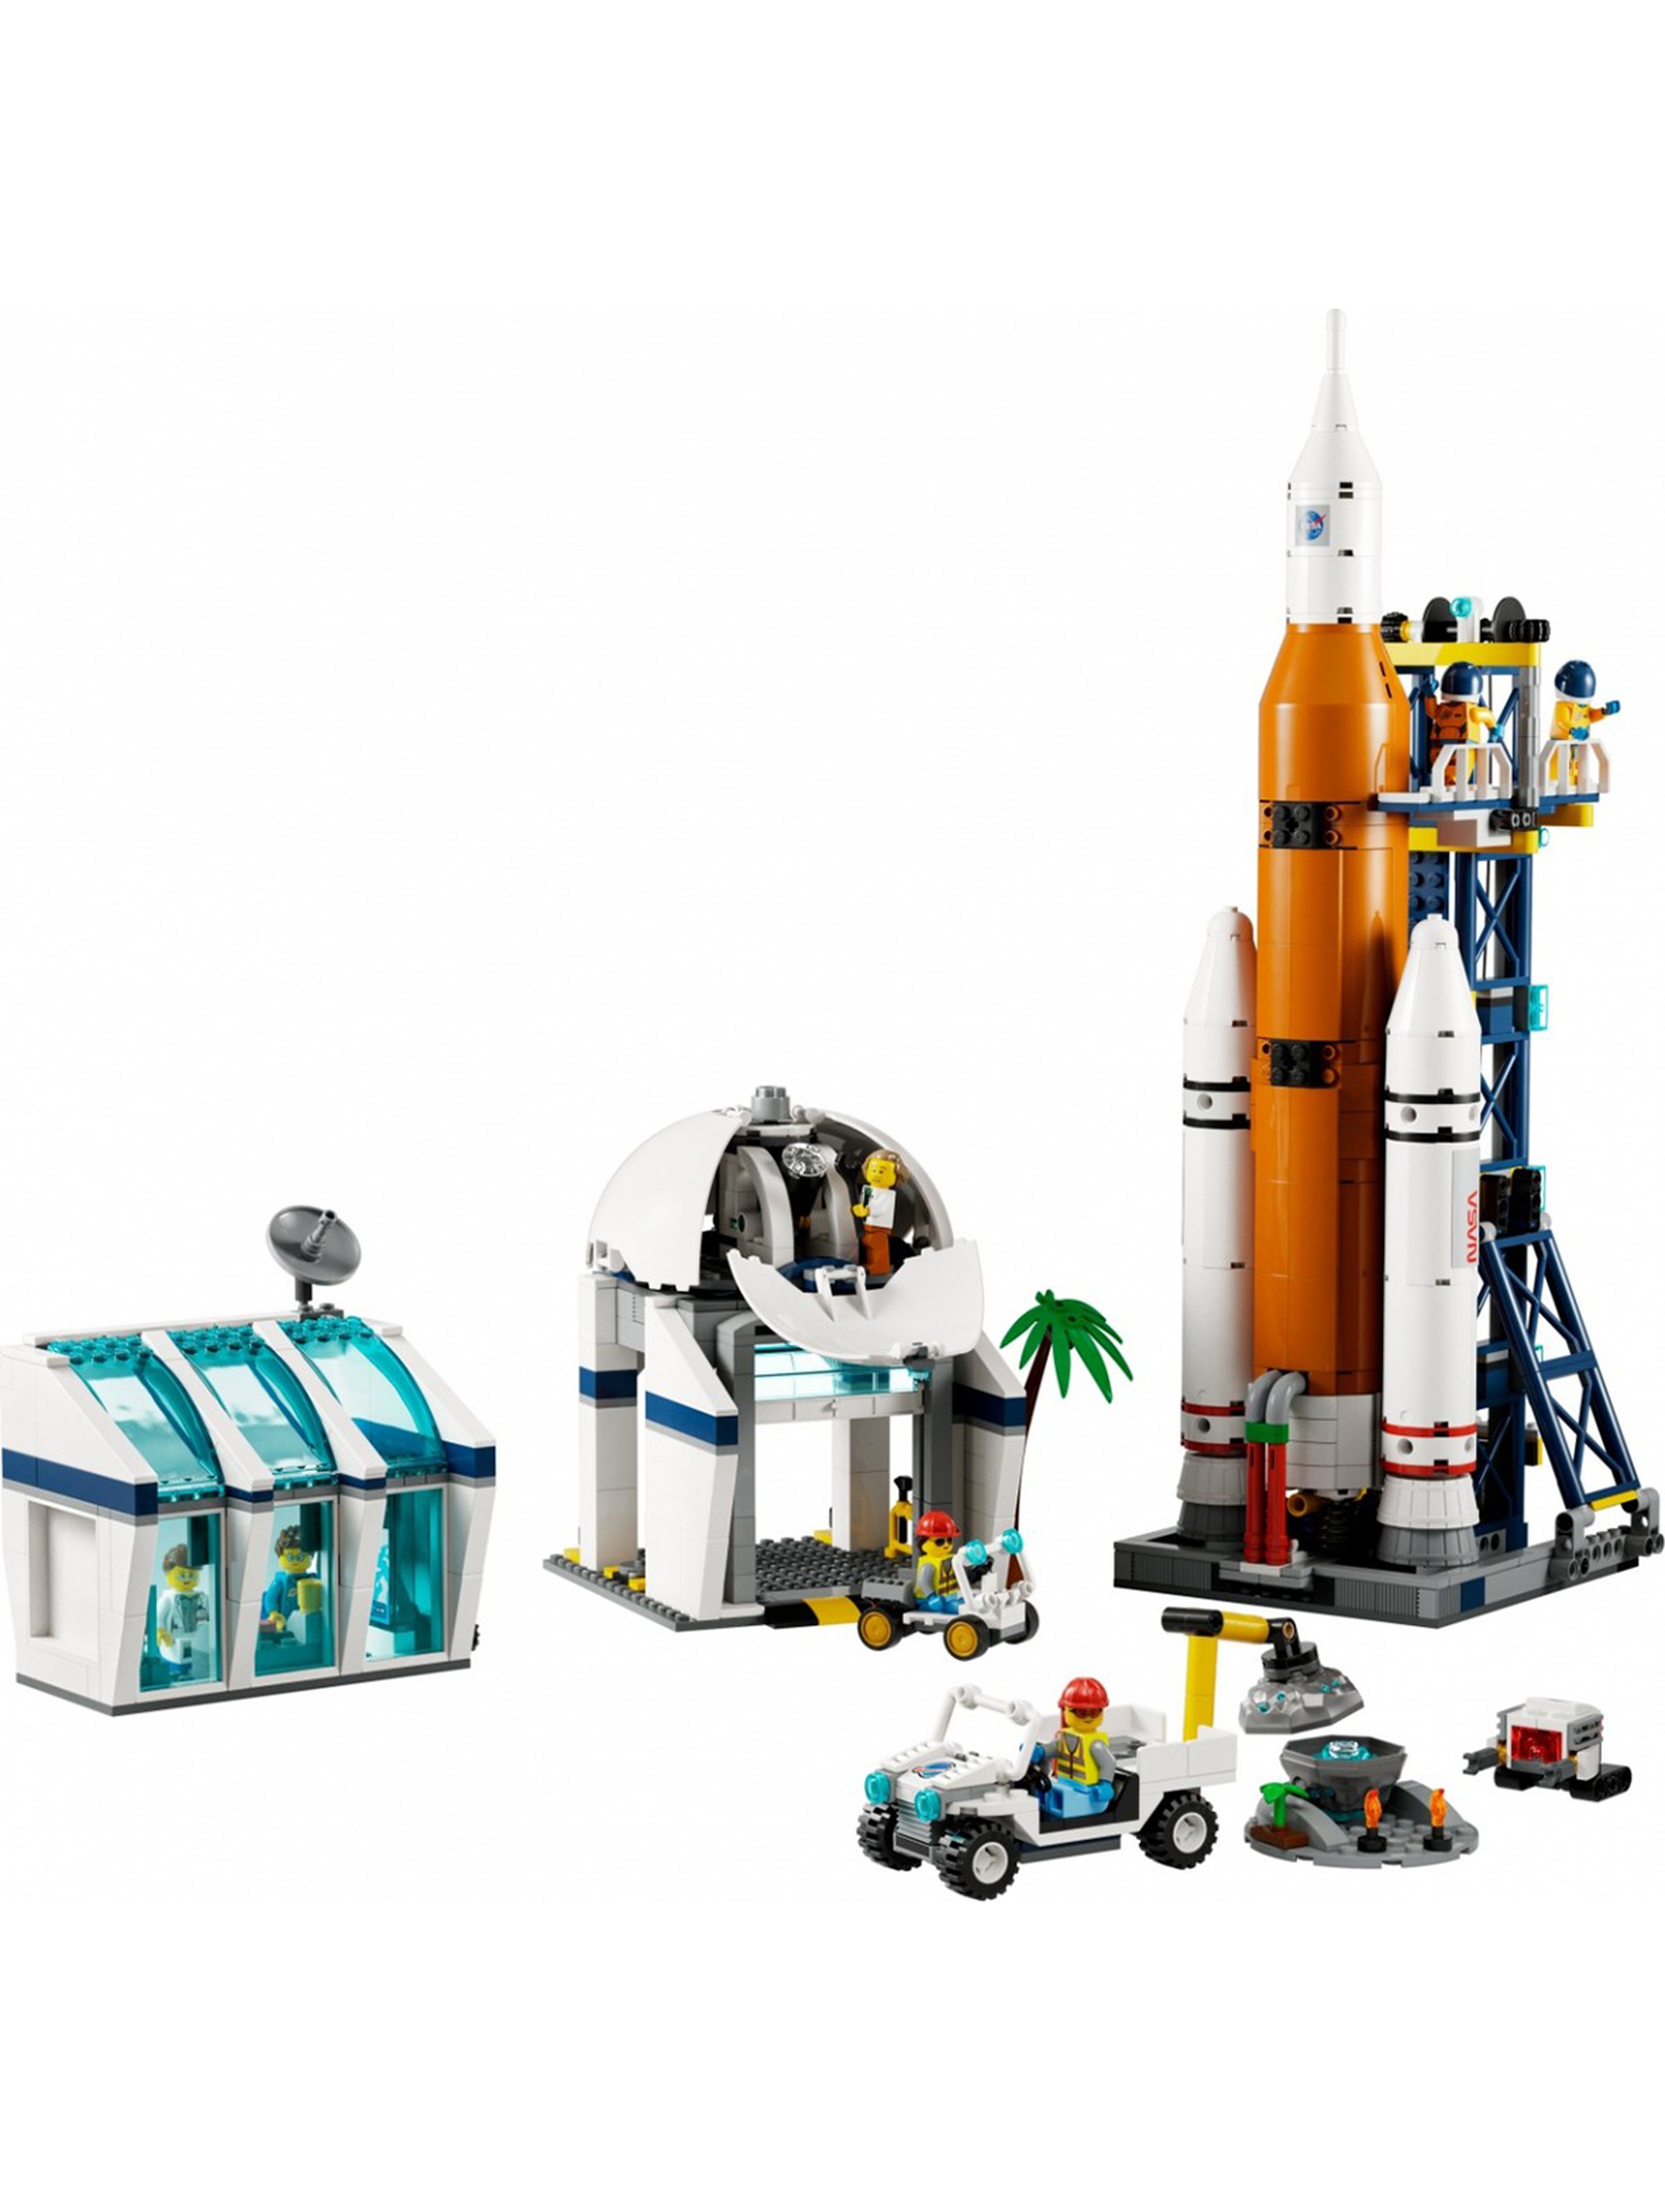 Klocki LEGO City 60351 - Start rakiety z kosmodromu